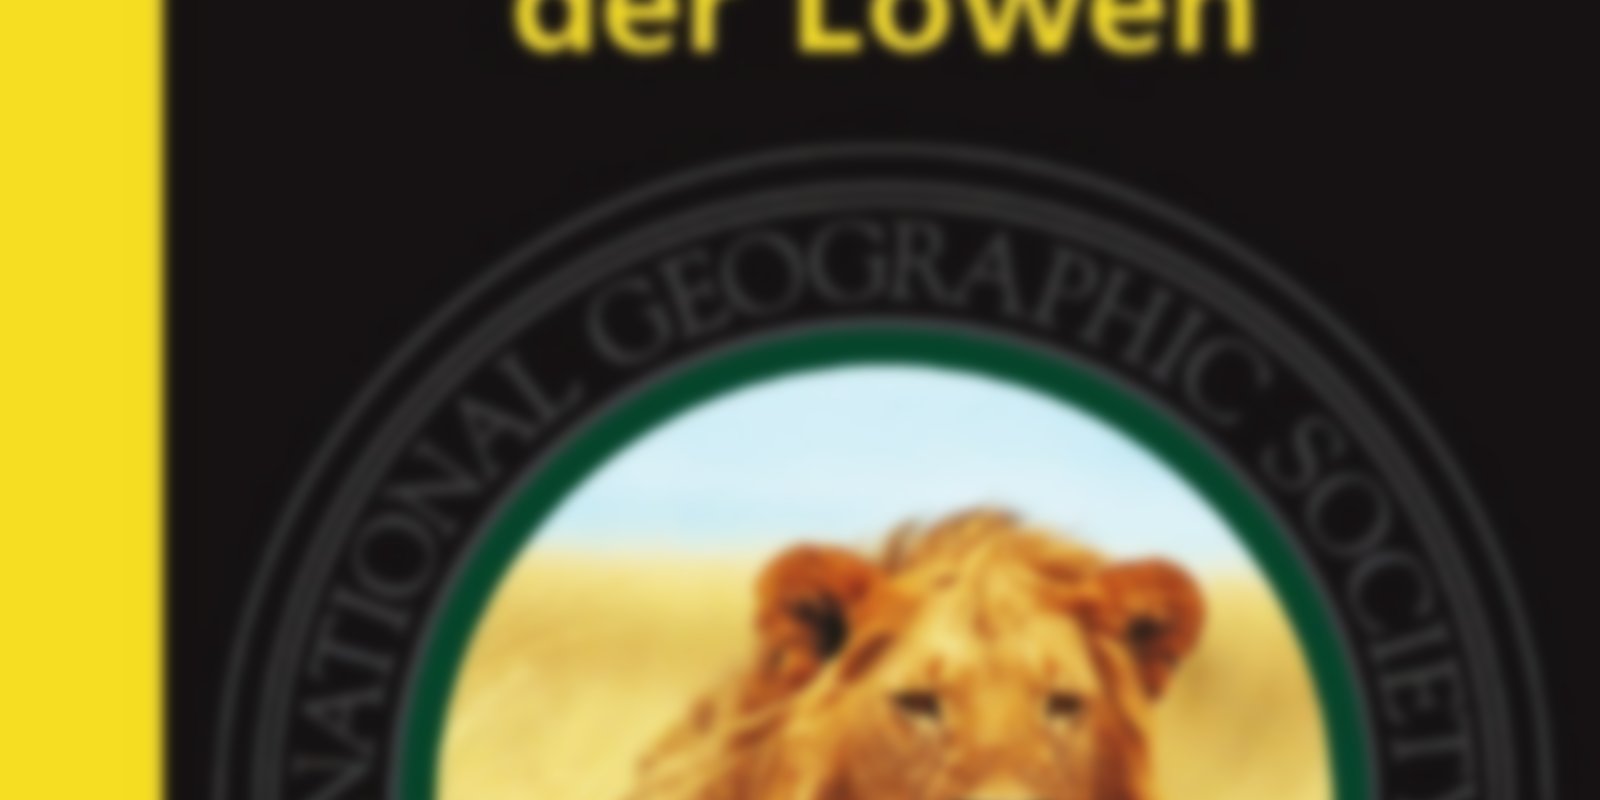 National Geographic - Auf der Fährte der Löwen